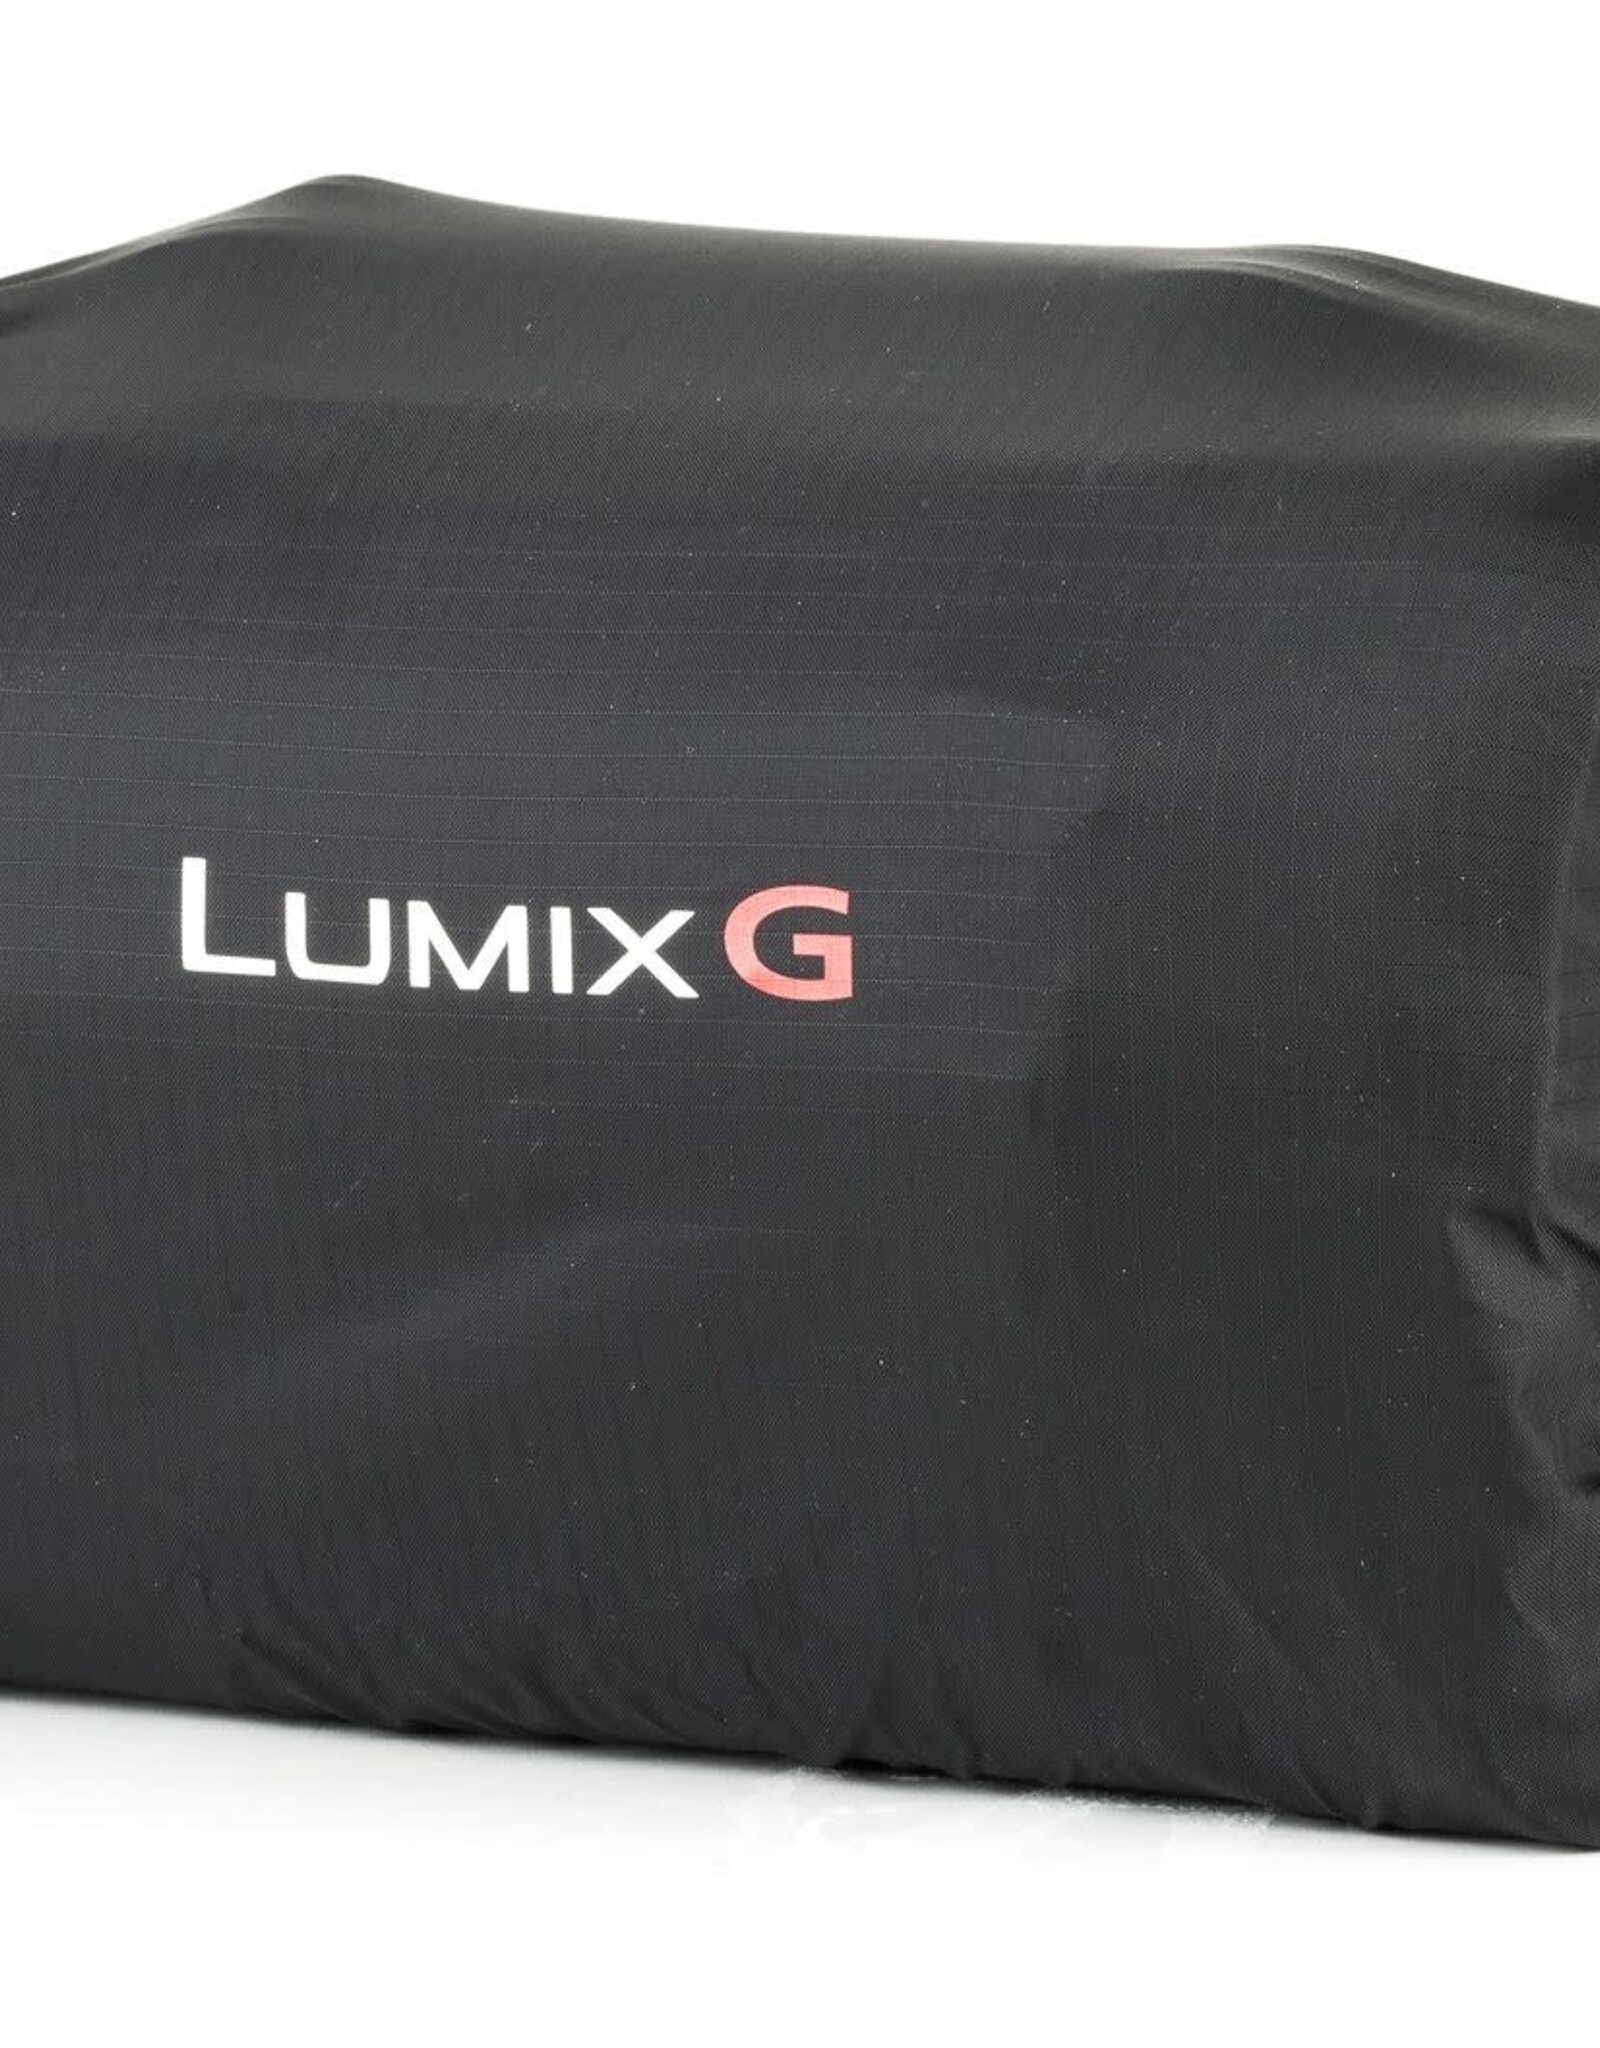 Panasonic LUMIX Camera Bag Grey - M